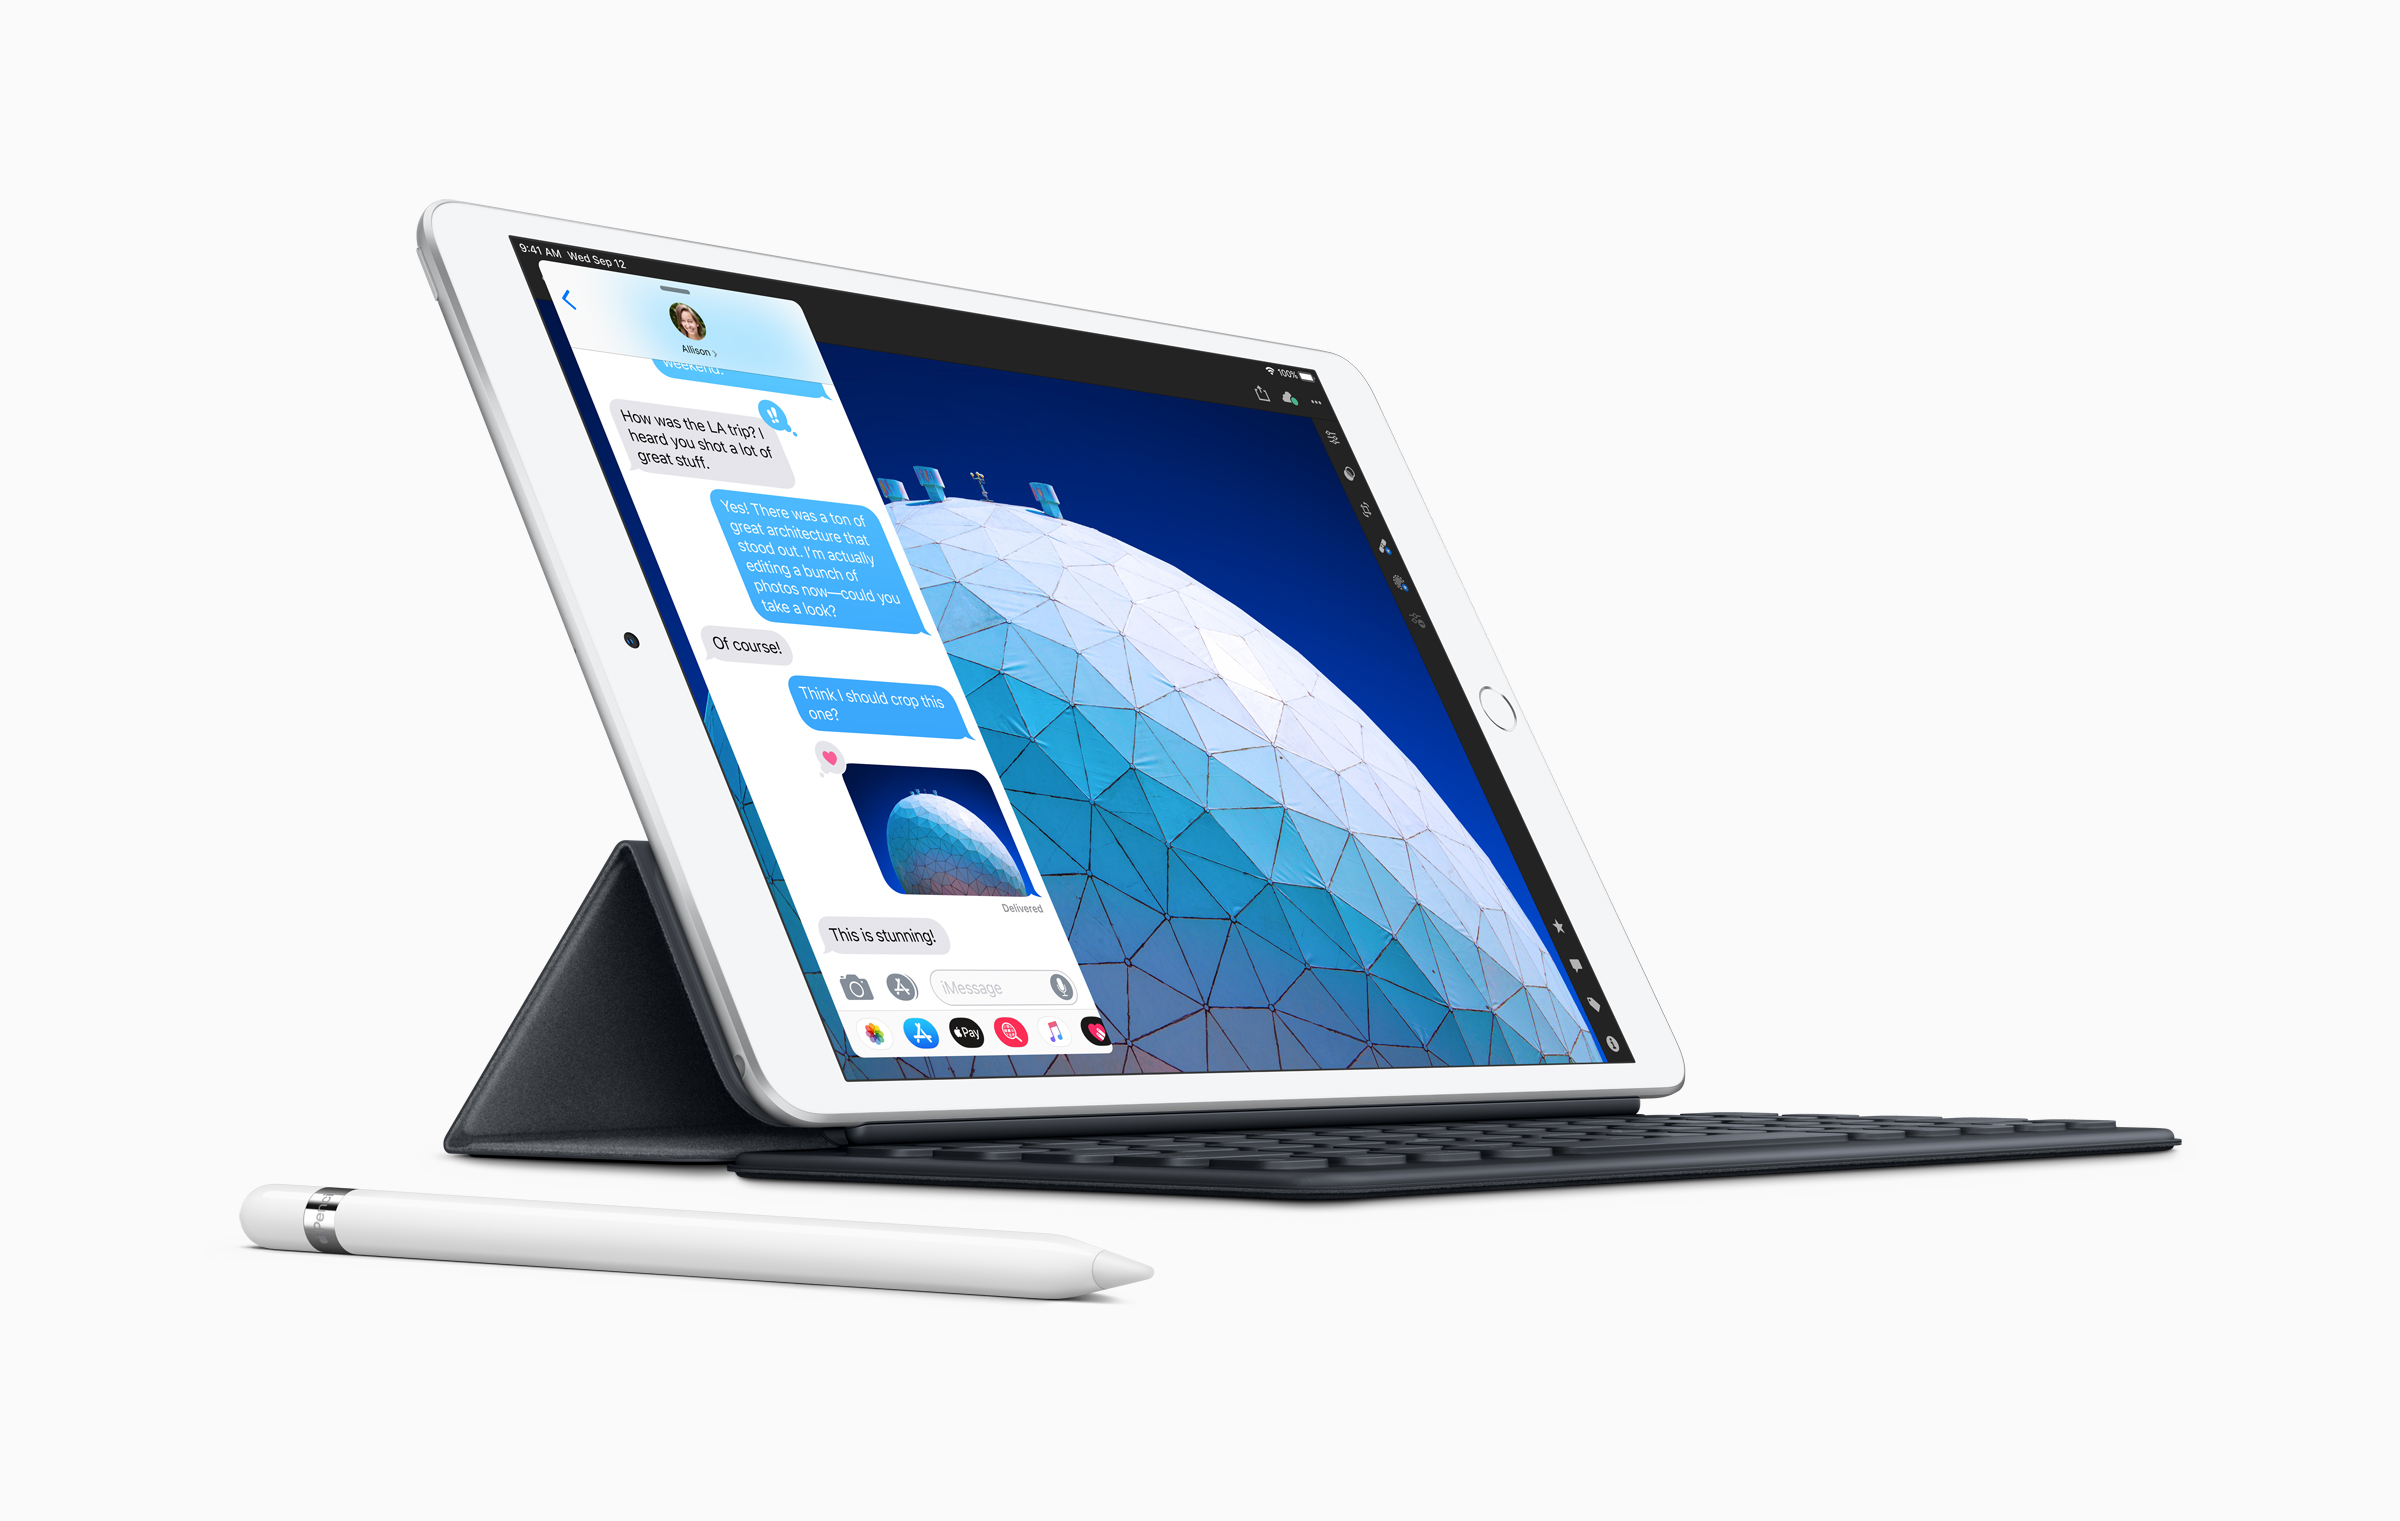 Ảnh nền đẹp chất lượng 4K cho cả iPad Pro và Desktop: Hình nền trên iPad Air mới